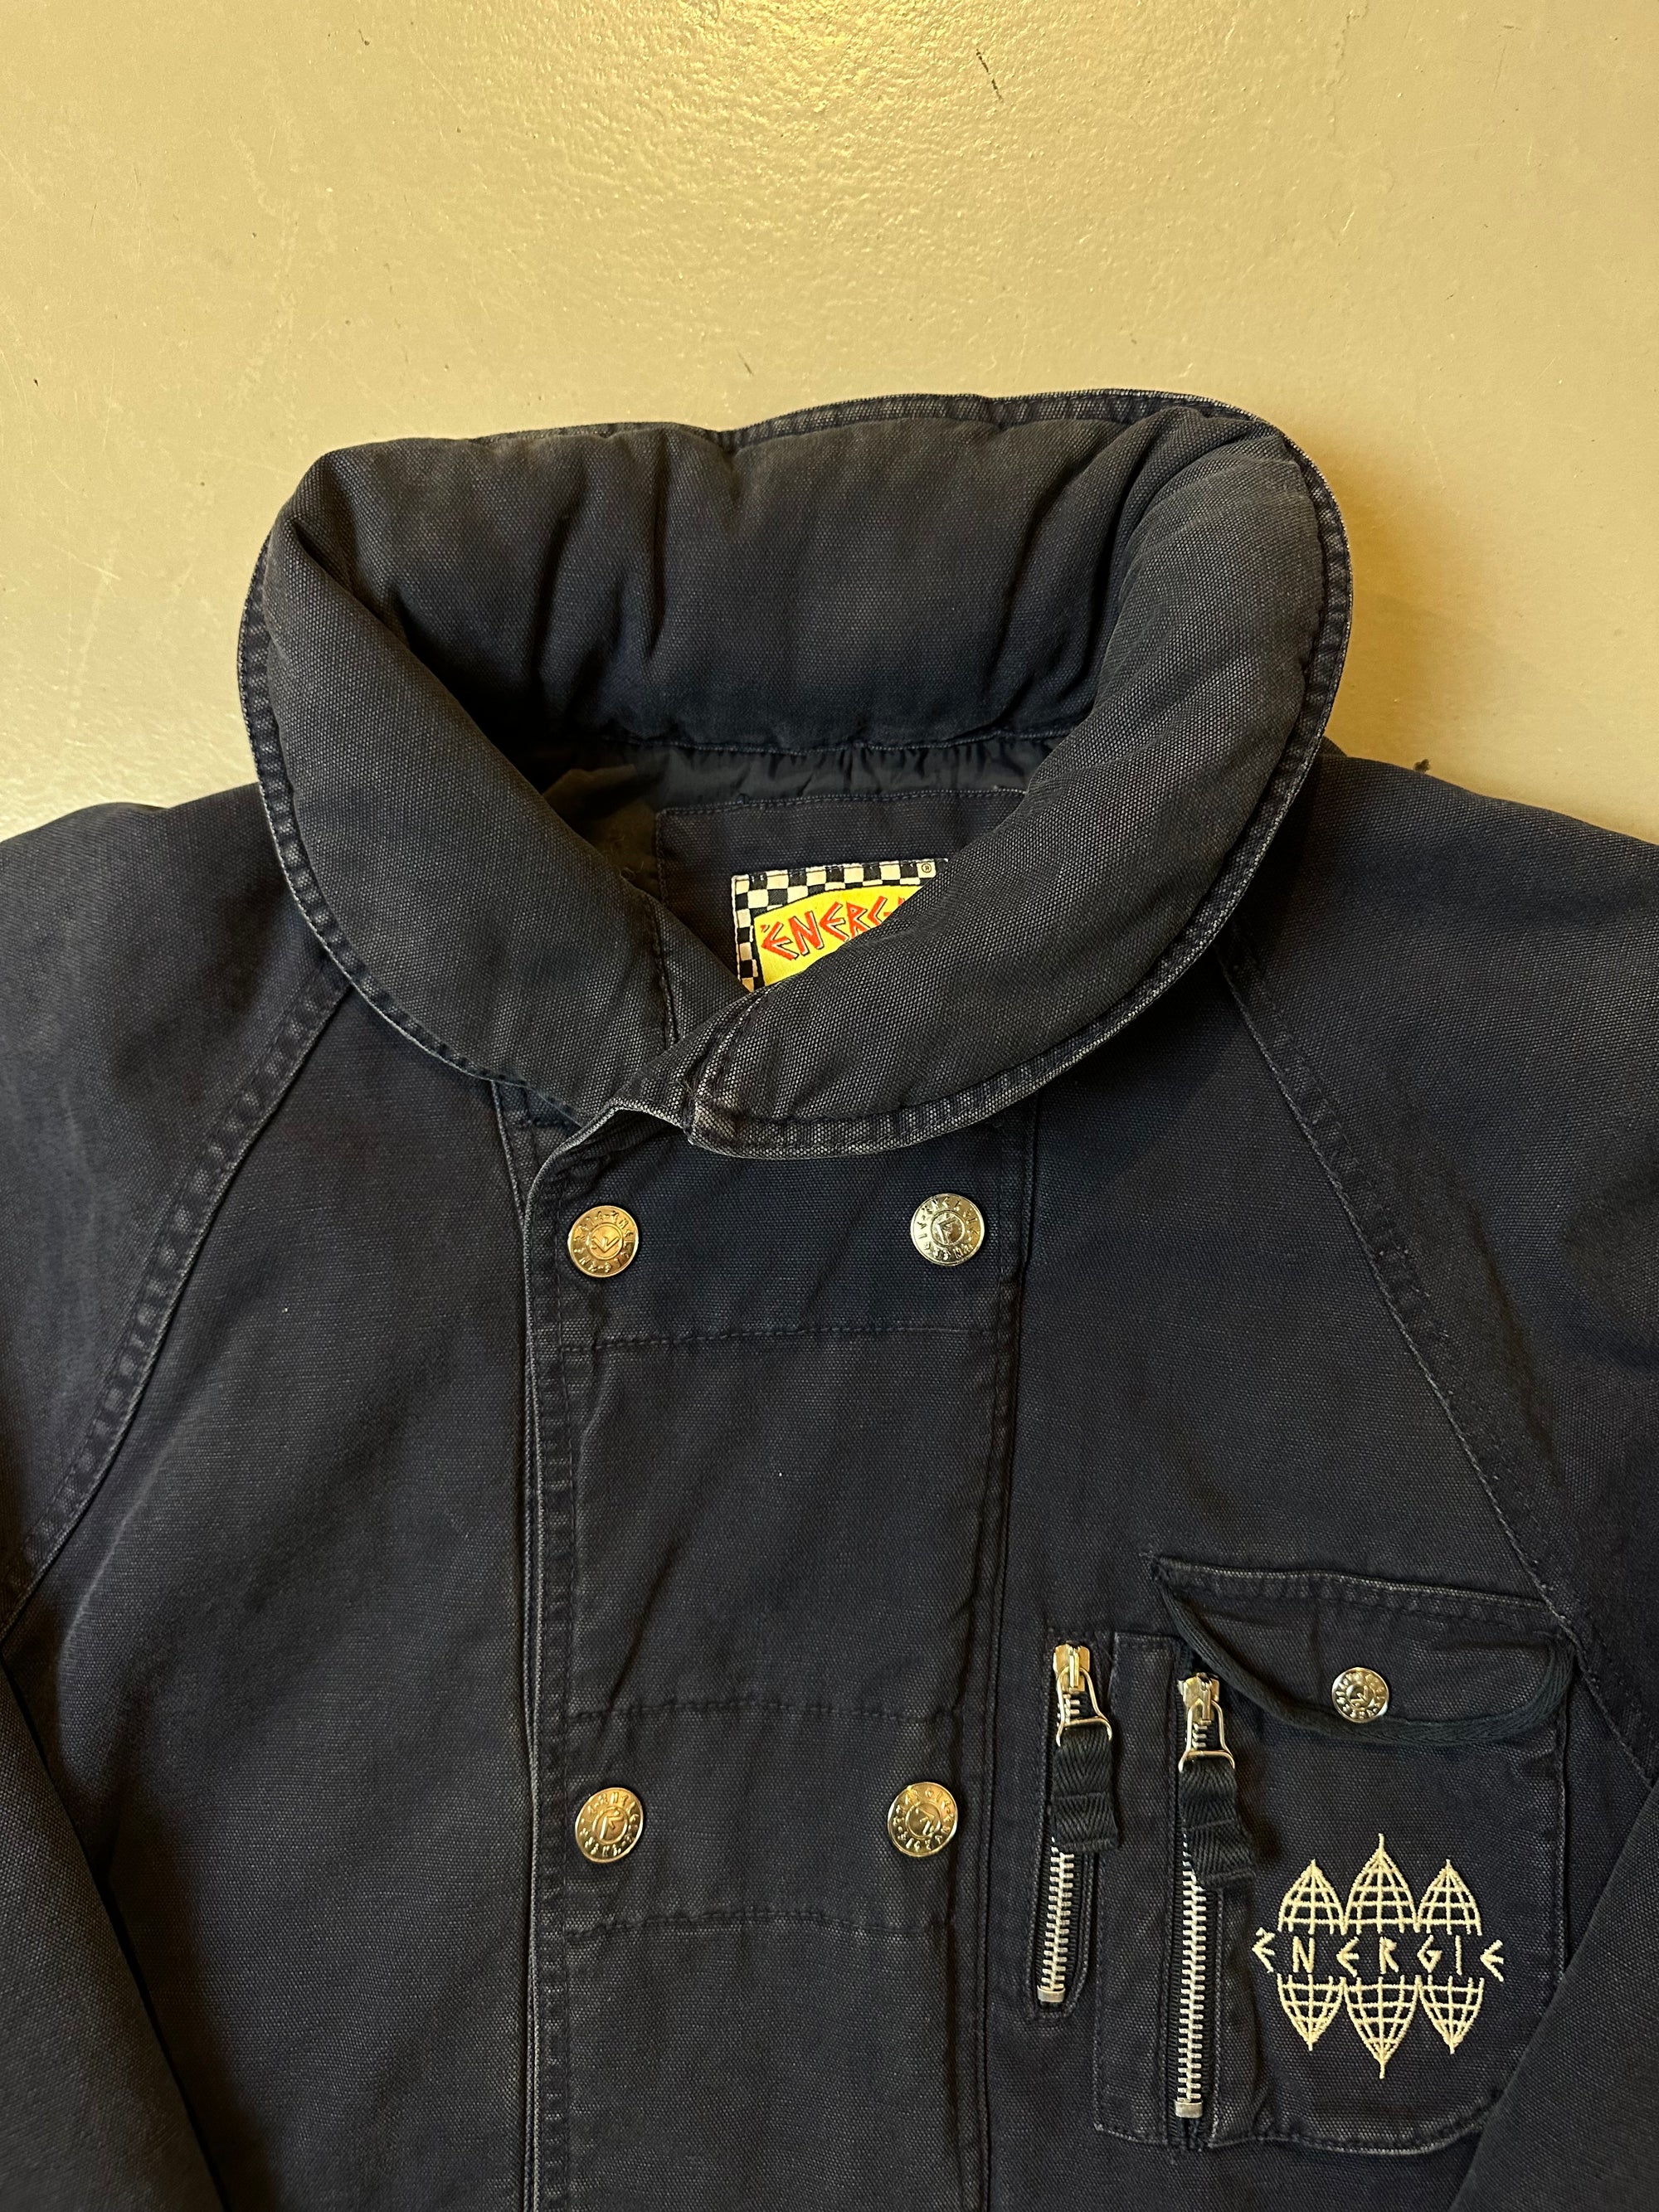 Detailliertes Produktbild von Navy farbene Energie Jacke von vorne in Größe M/L mit silbernen Knöpfen 